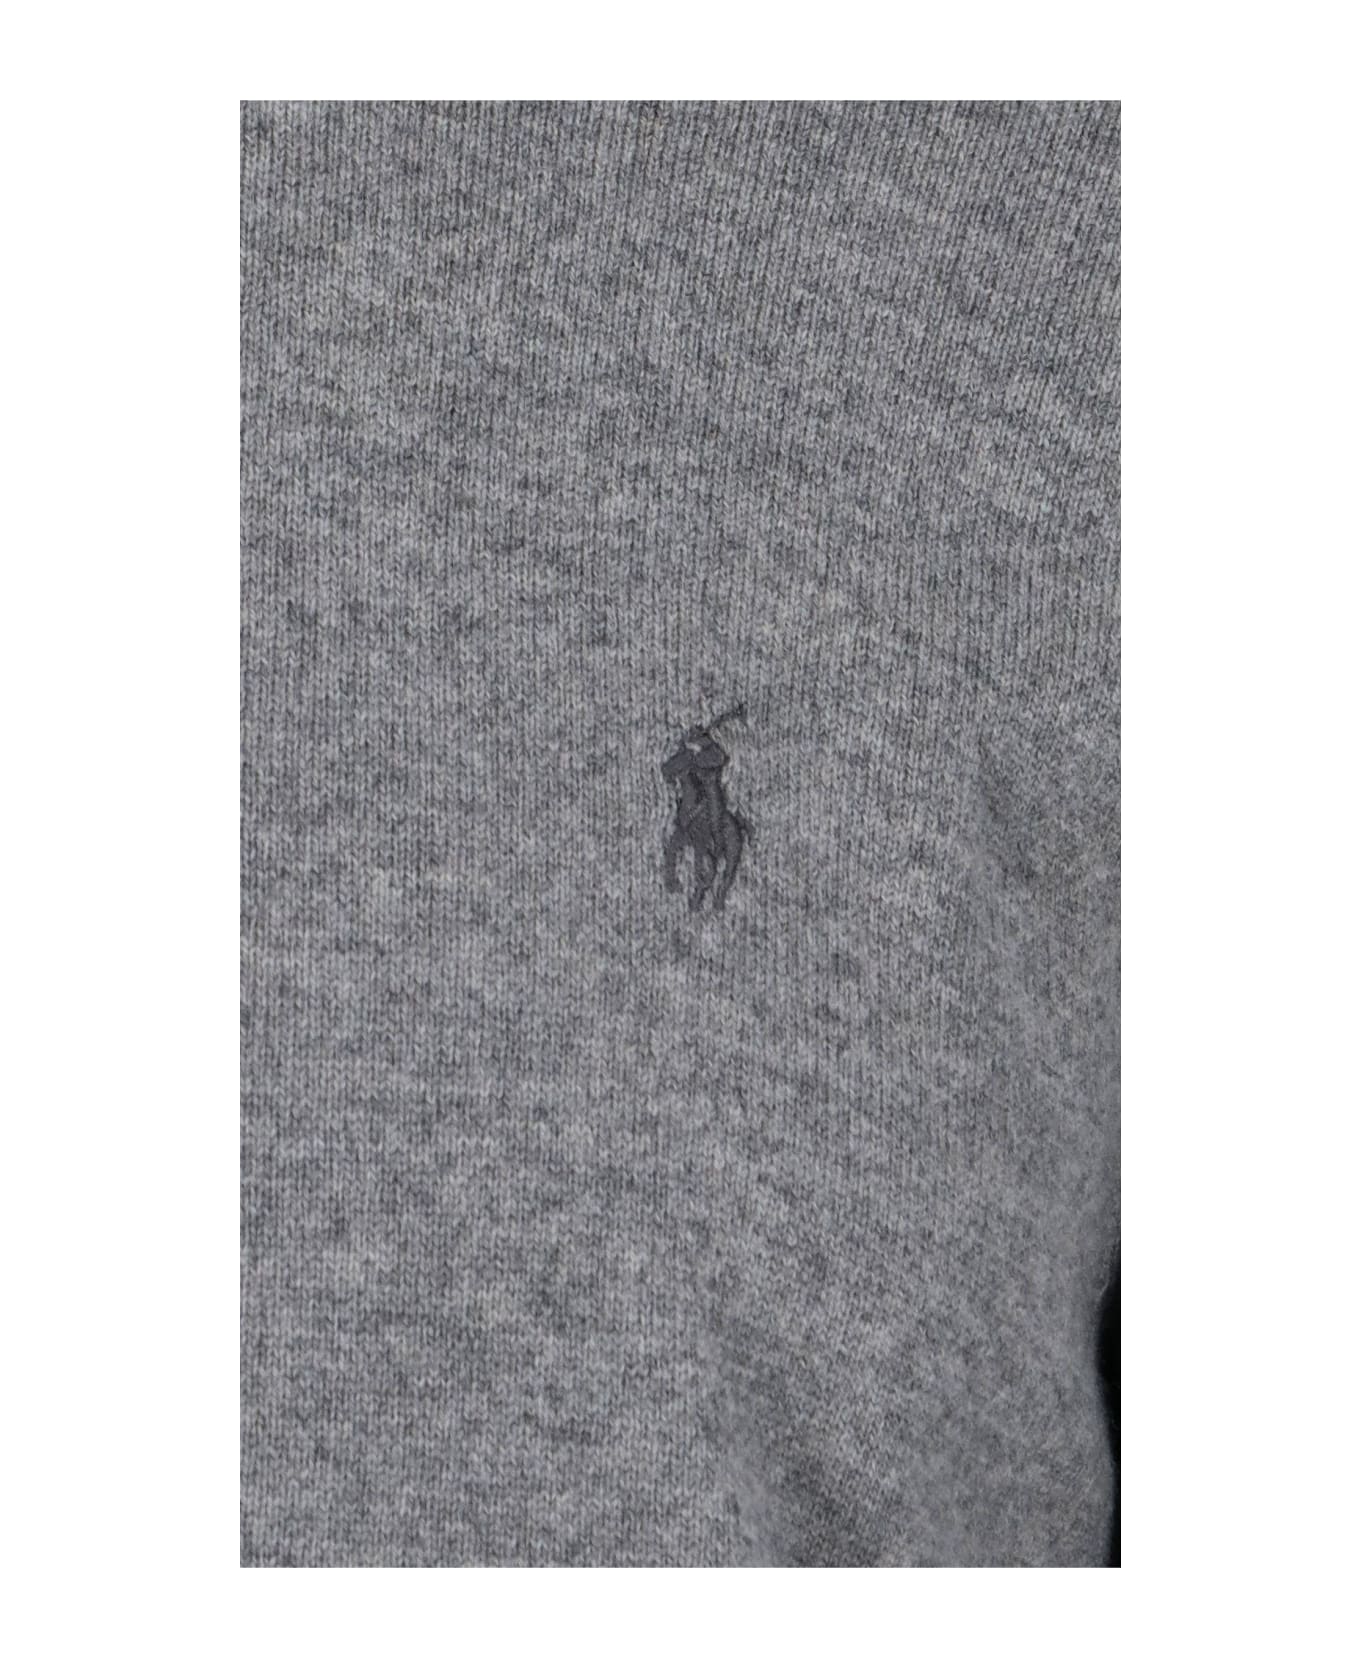 Ralph Lauren Logo Sweater - GREY フリース